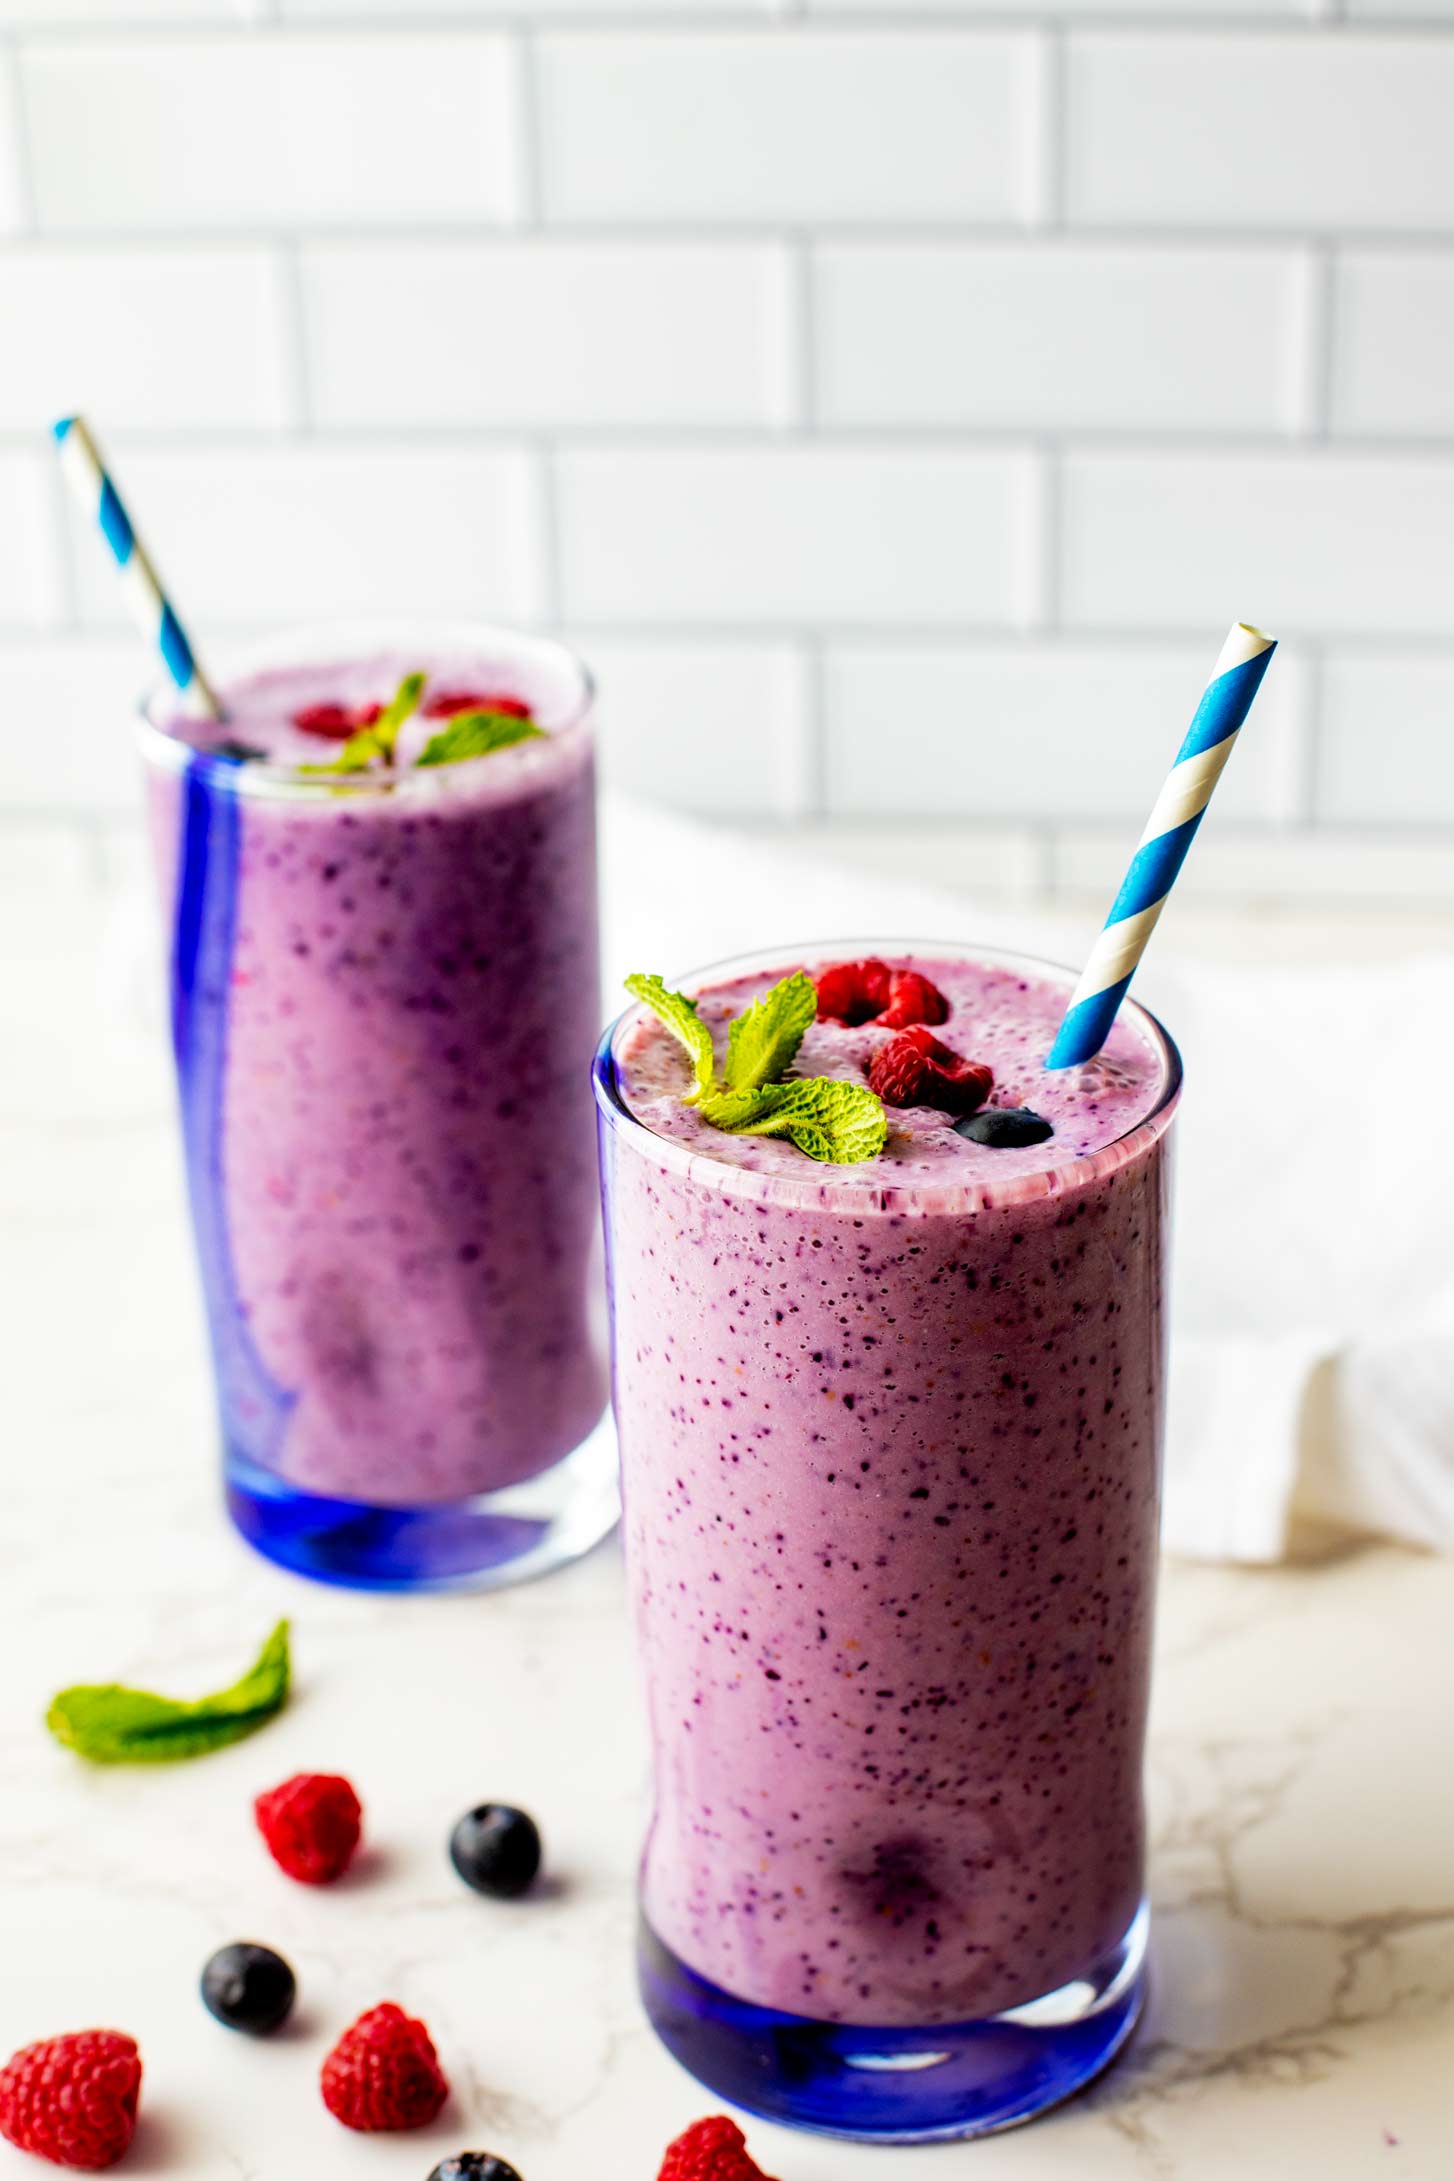 Side photo of raspberry blueberry smoothies ready to enjoy.